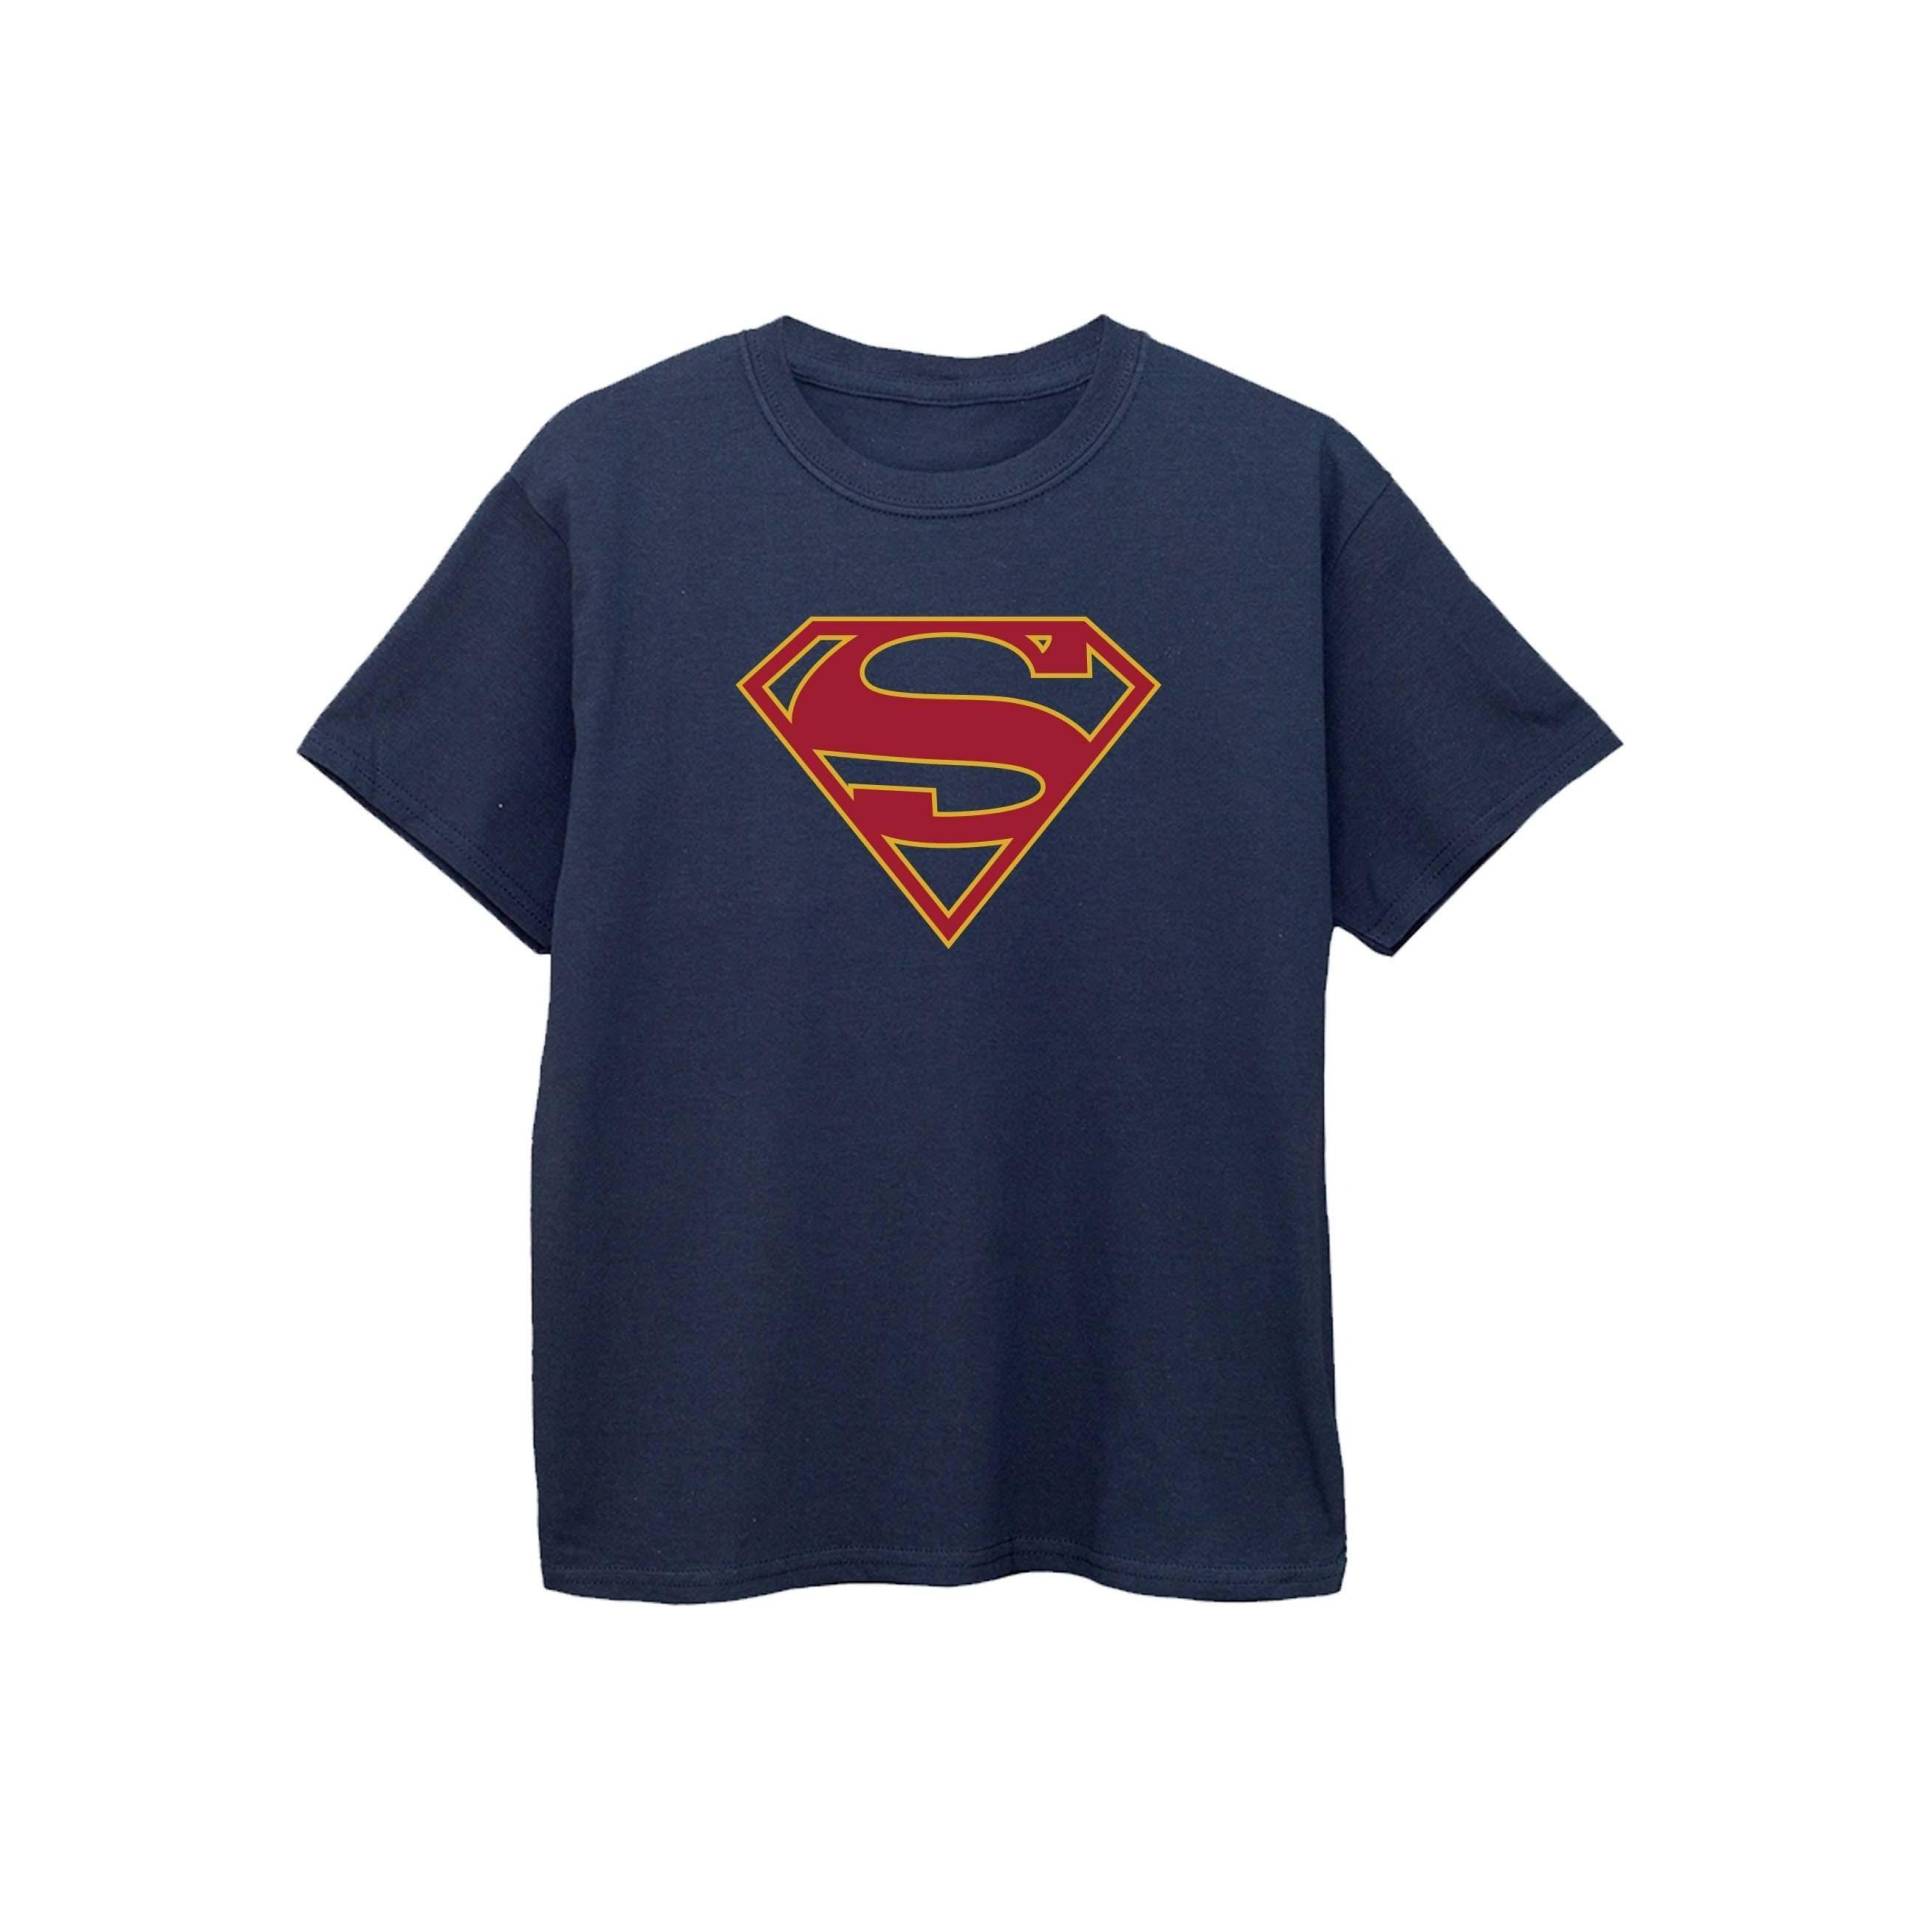 Tshirt Mädchen Marine 128 von Supergirl